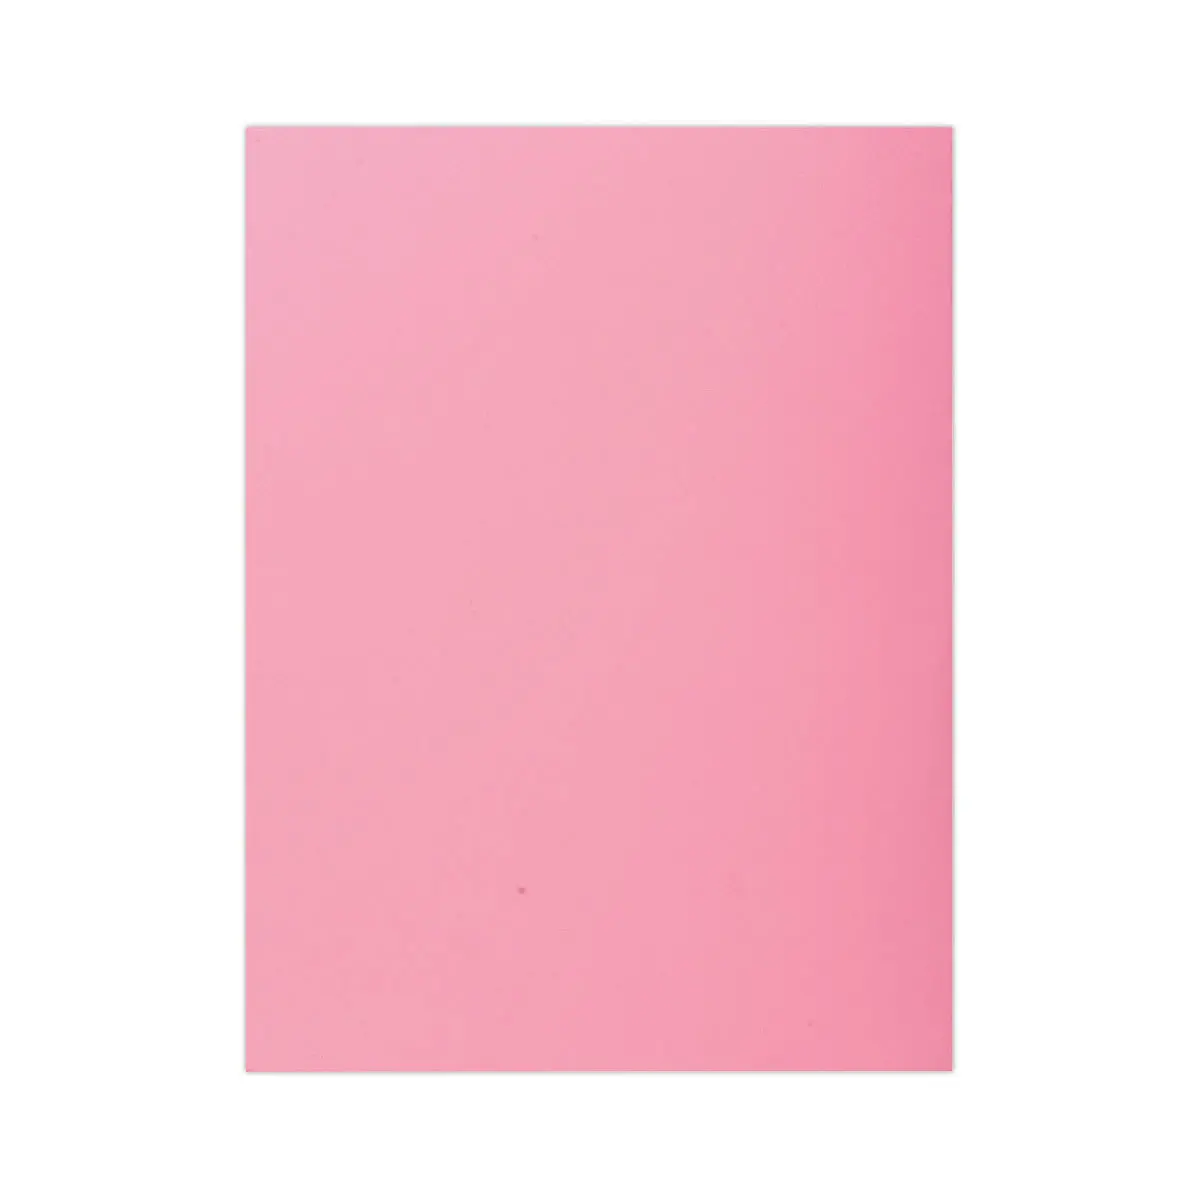 Lot de 100 Chemises 1 rabat 160 g carte qualité supérieure PEFC - couleurs pastel rose photo du produit